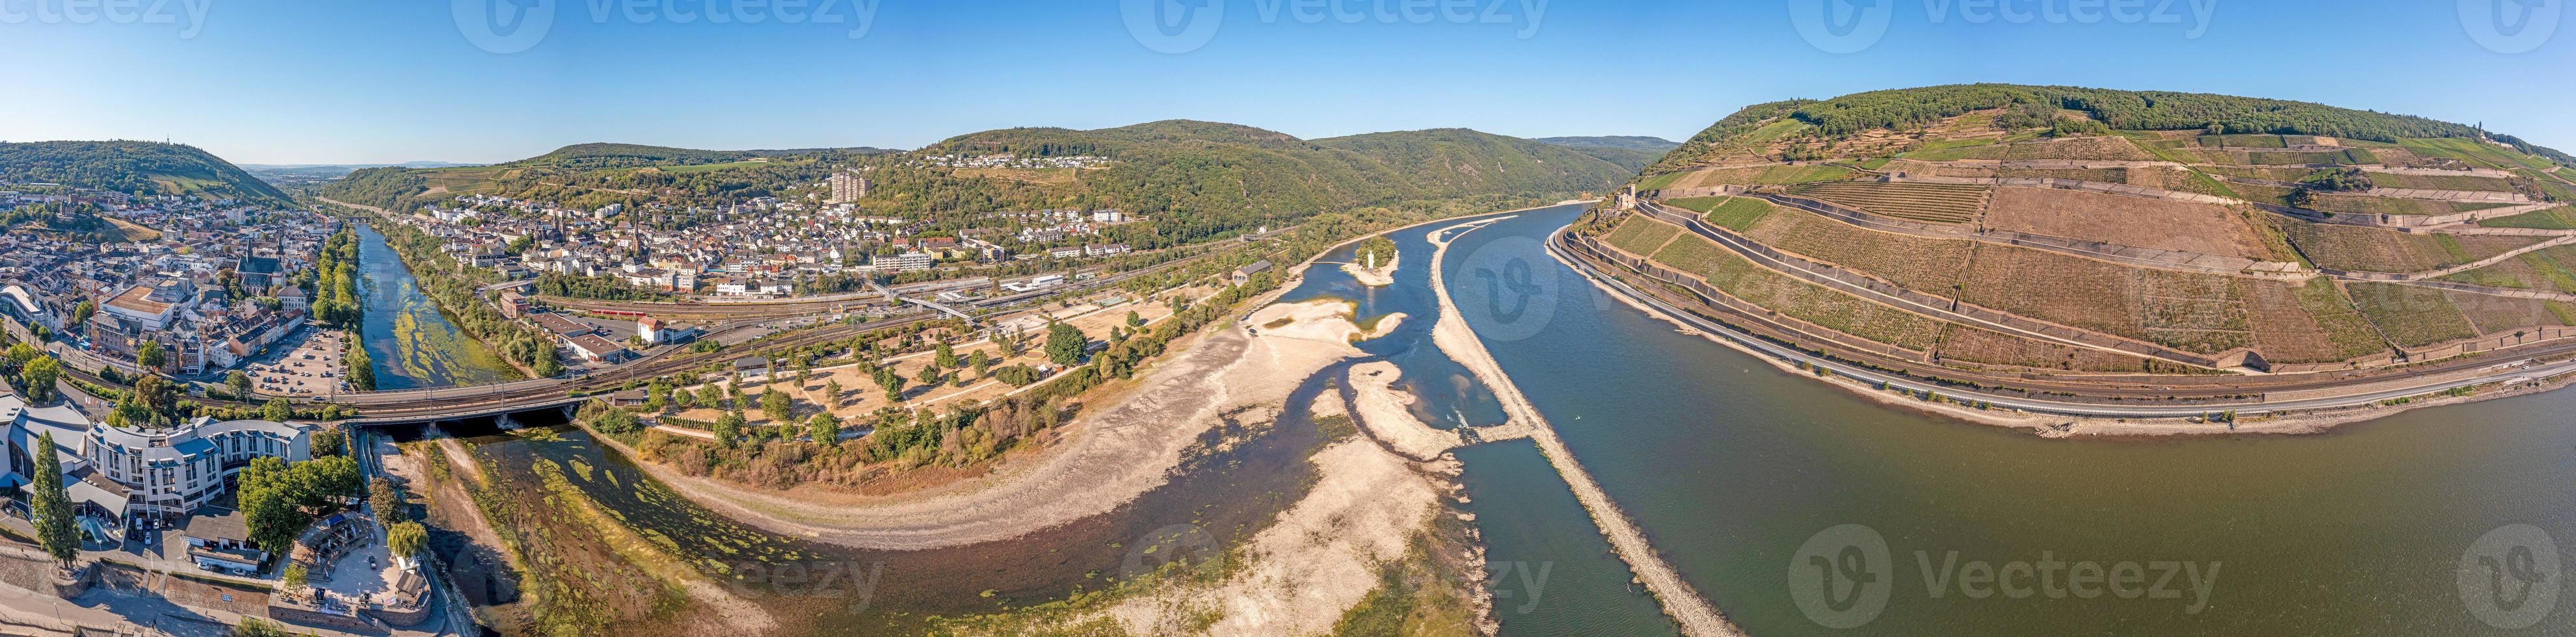 image de drone de l'estuaire de la nahe avec la rivière nahe presque asséchée photo